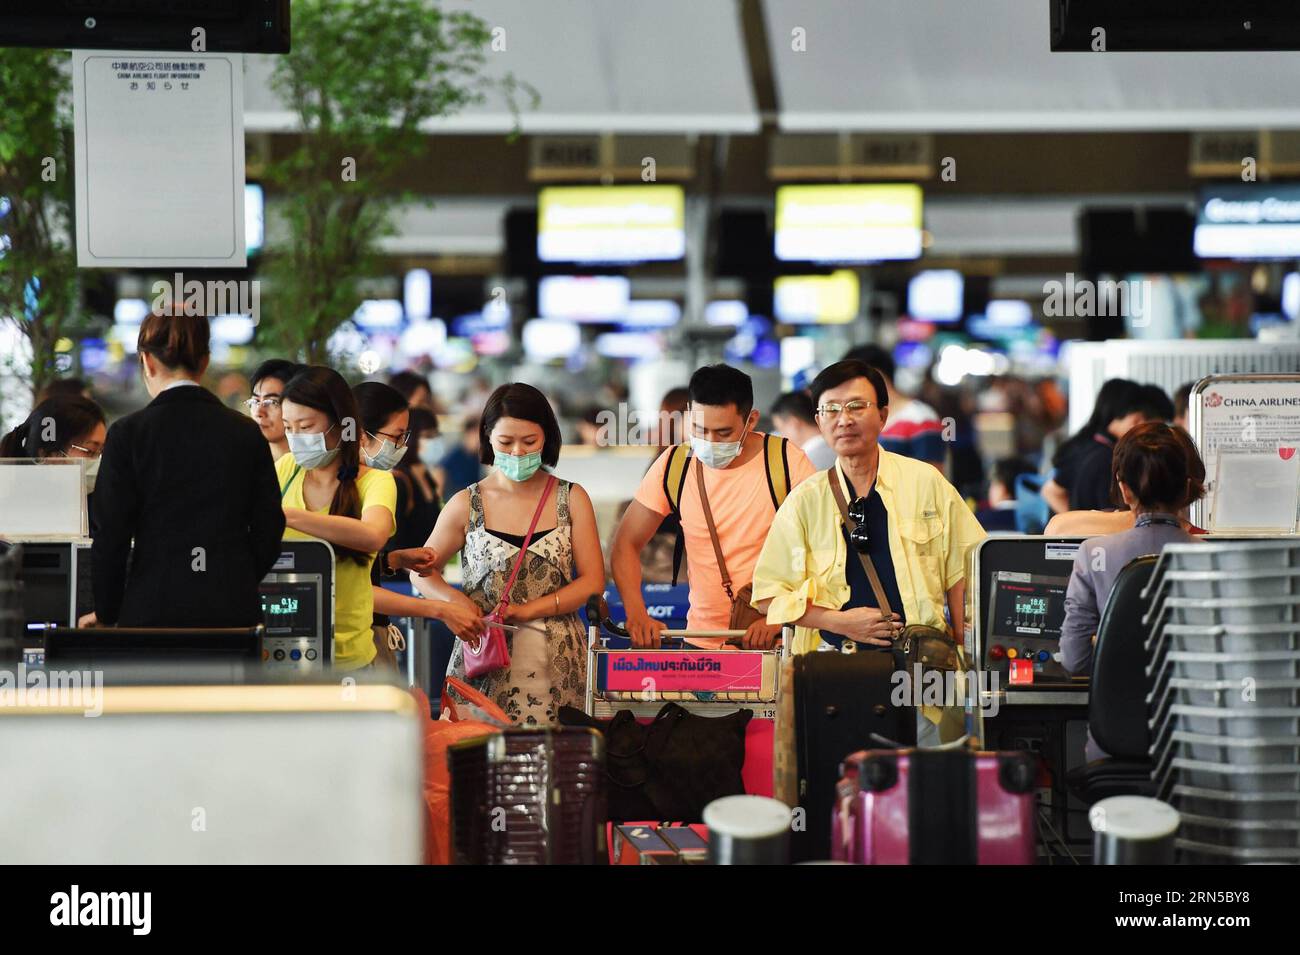 (150620) -- BANGKOK, le 20 juin 2015 -- des passagers portant des masques faciaux sont vus à un comptoir d'enregistrement à l'aéroport Suvarnabhumi de Bangkok, Thaïlande, le 20 juin 2015. Le ministère de la Santé publique de Thaïlande a confirmé jeudi le premier cas de syndrome respiratoire du Moyen-Orient (mers). A Bangkok, la capitale du pays et un centre de transport international, les citoyens et les voyageurs ont commencé à adopter des méthodes préventives telles que le port de masques protecteurs pour le visage. THAILAND-BANGKOK-mers-DISEASE-PREVENTION LixMangmang PUBLICATIONxNOTxINxCHN 150620 Bangkok juin 20 2015 passagers portant FACI Banque D'Images